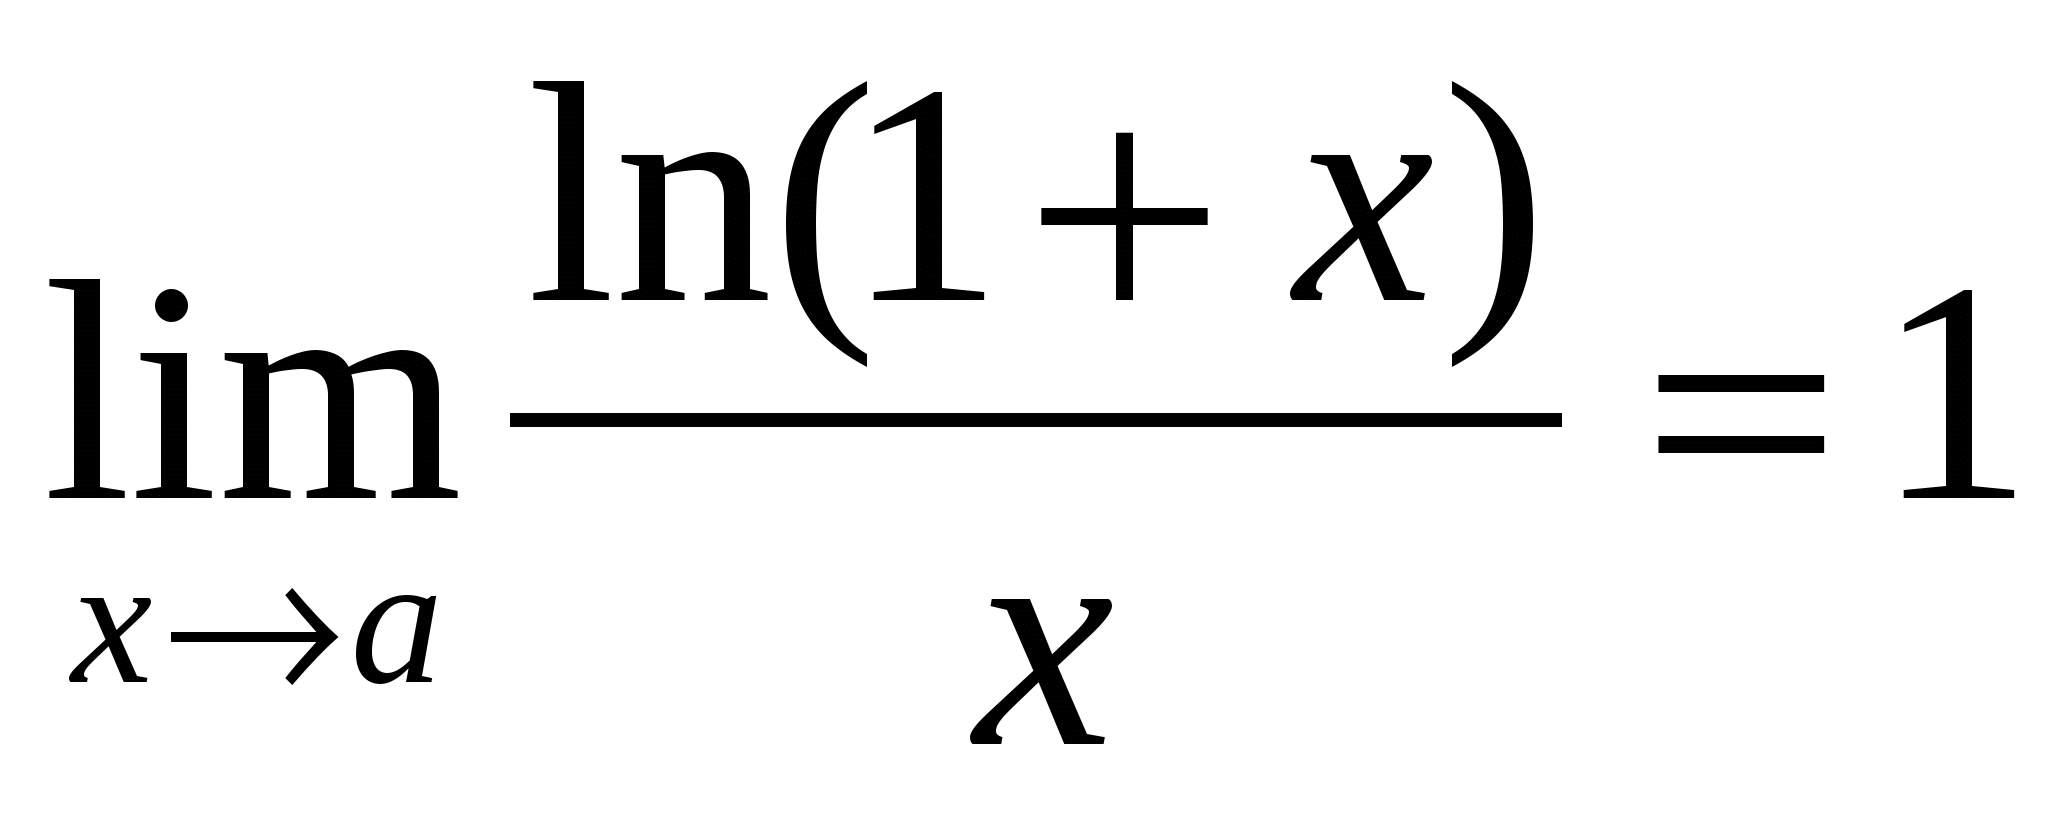 X1 3.3 5. Предел Ln 1+x /x. Ln x/x предел. Ln 1+x/1-x. Ln((1+x).(1-x)) предел.